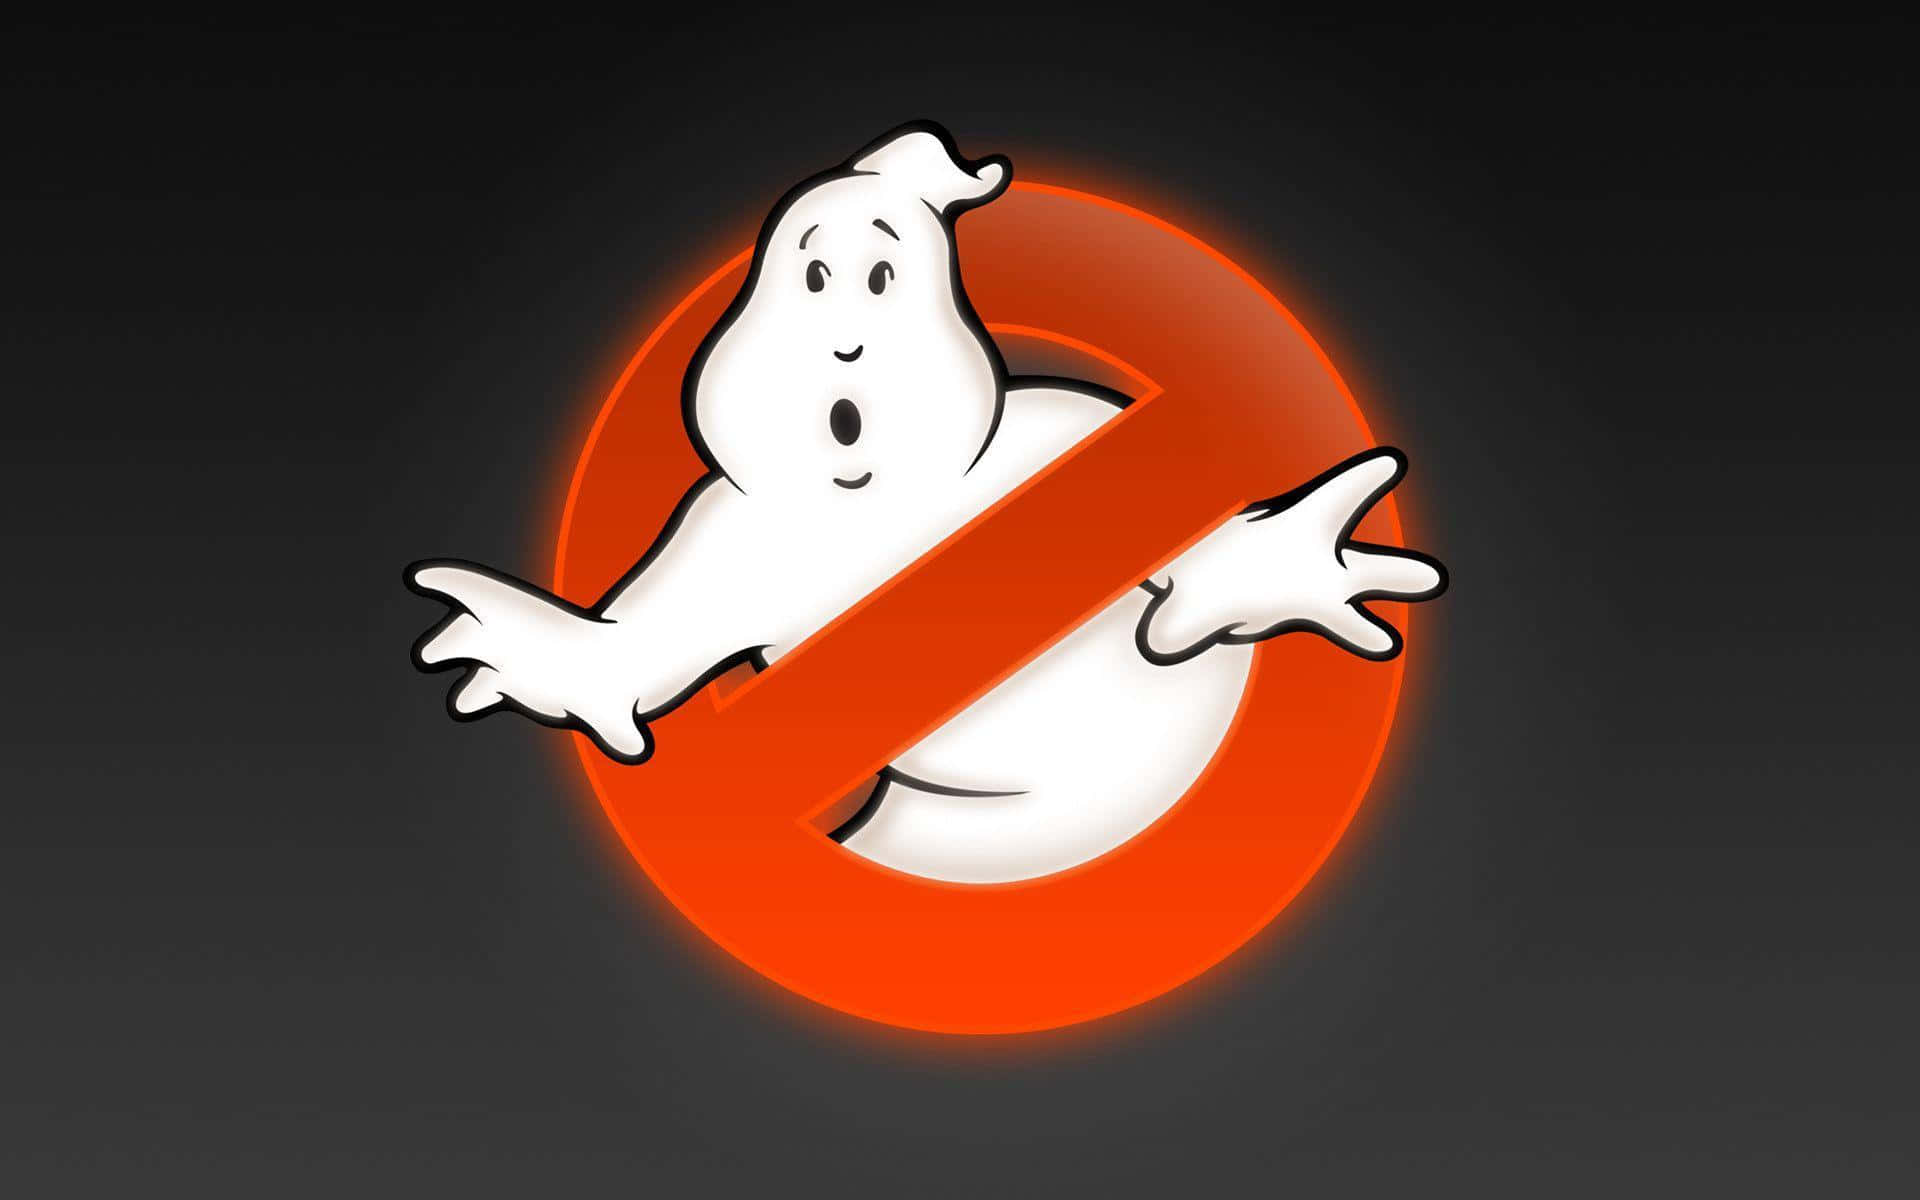 Disseumenneskelige Ghostbusters Er Klar Til At Fange Nogle Spøgelser!